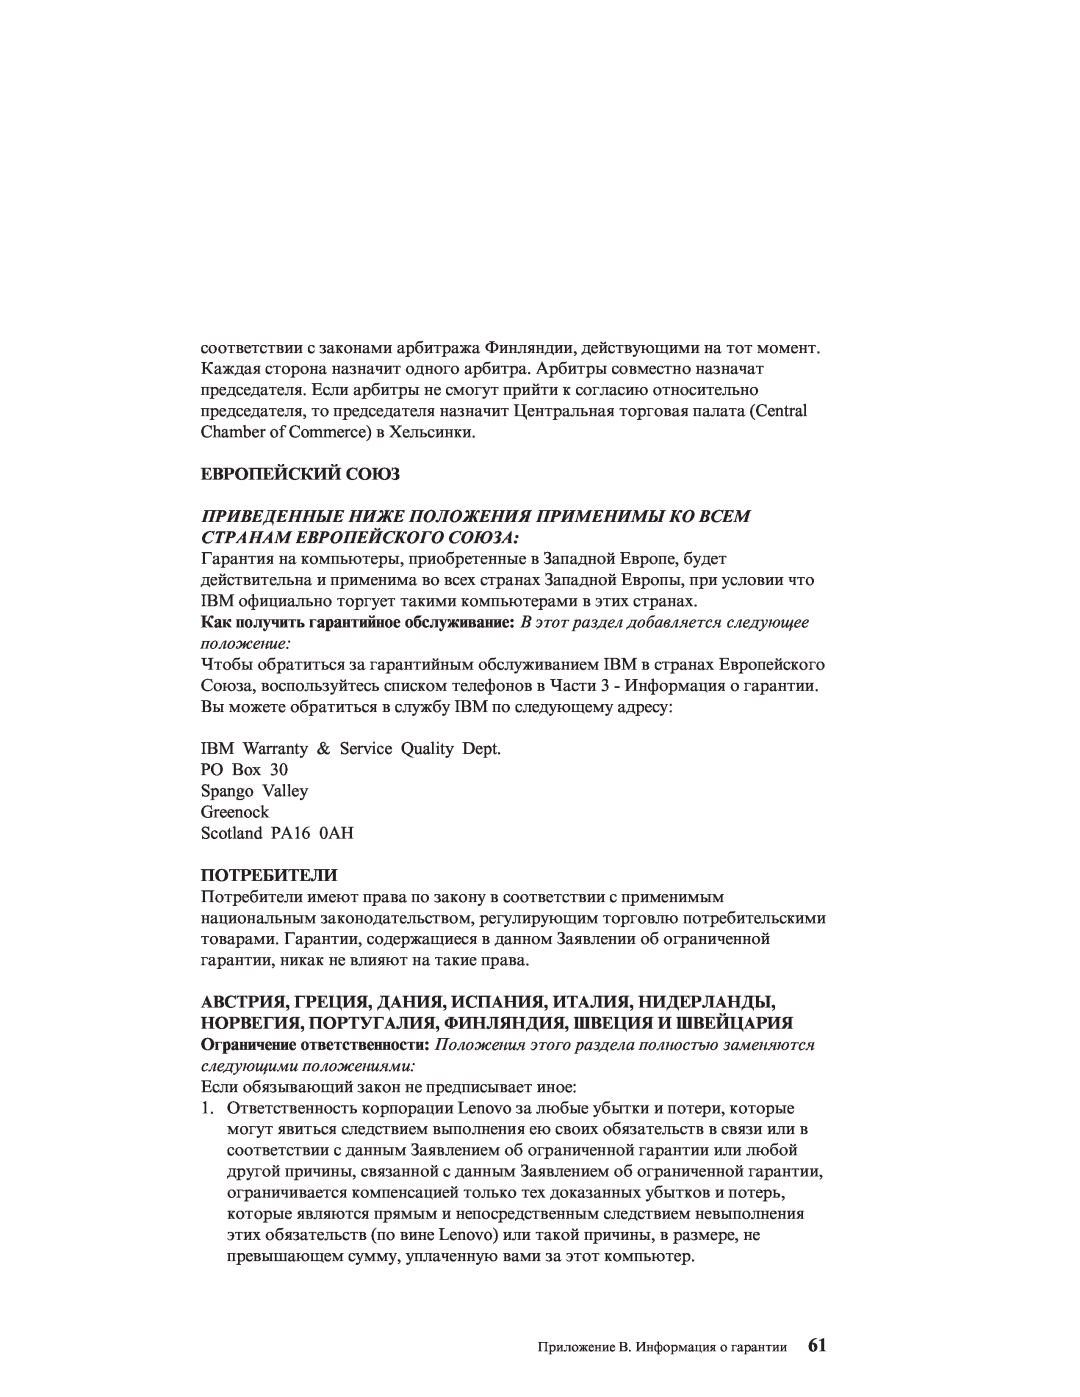 IBM R51E manual Европейский Союз, Потребители, Приведенные Ниже Положения Применимы Ко Всем Странам Европейского Союза 